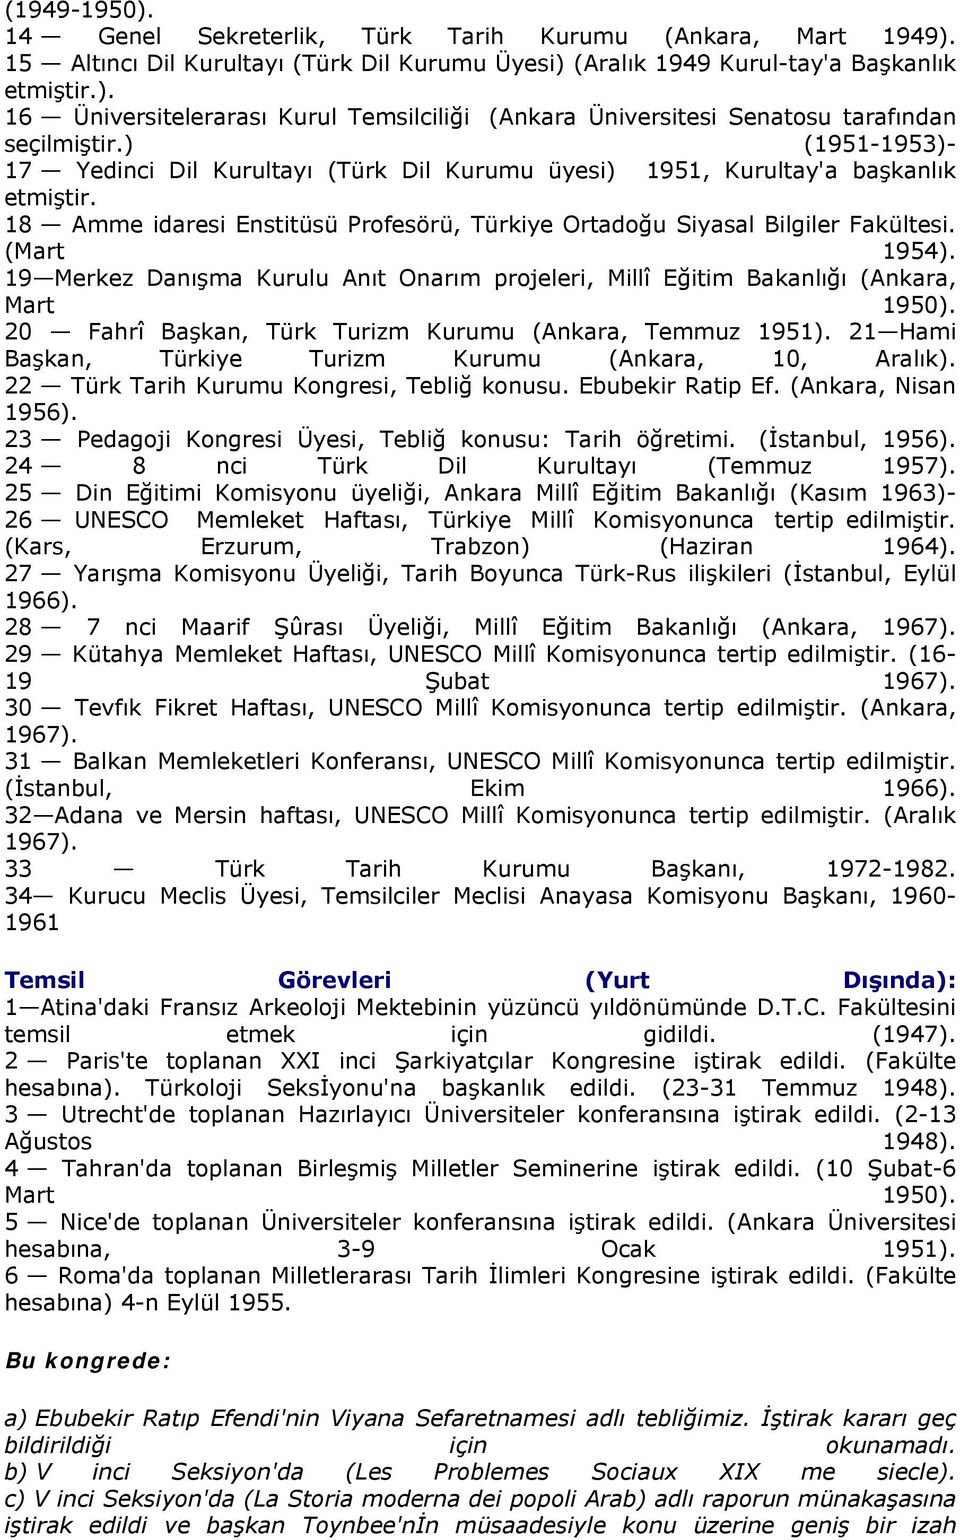 19 Merkez Danışma Kurulu Anıt Onarım projeleri, Millî Eğitim Bakanlığı (Ankara, Mart 1950). 20 Fahrî Başkan, Türk Turizm Kurumu (Ankara, Temmuz 1951).